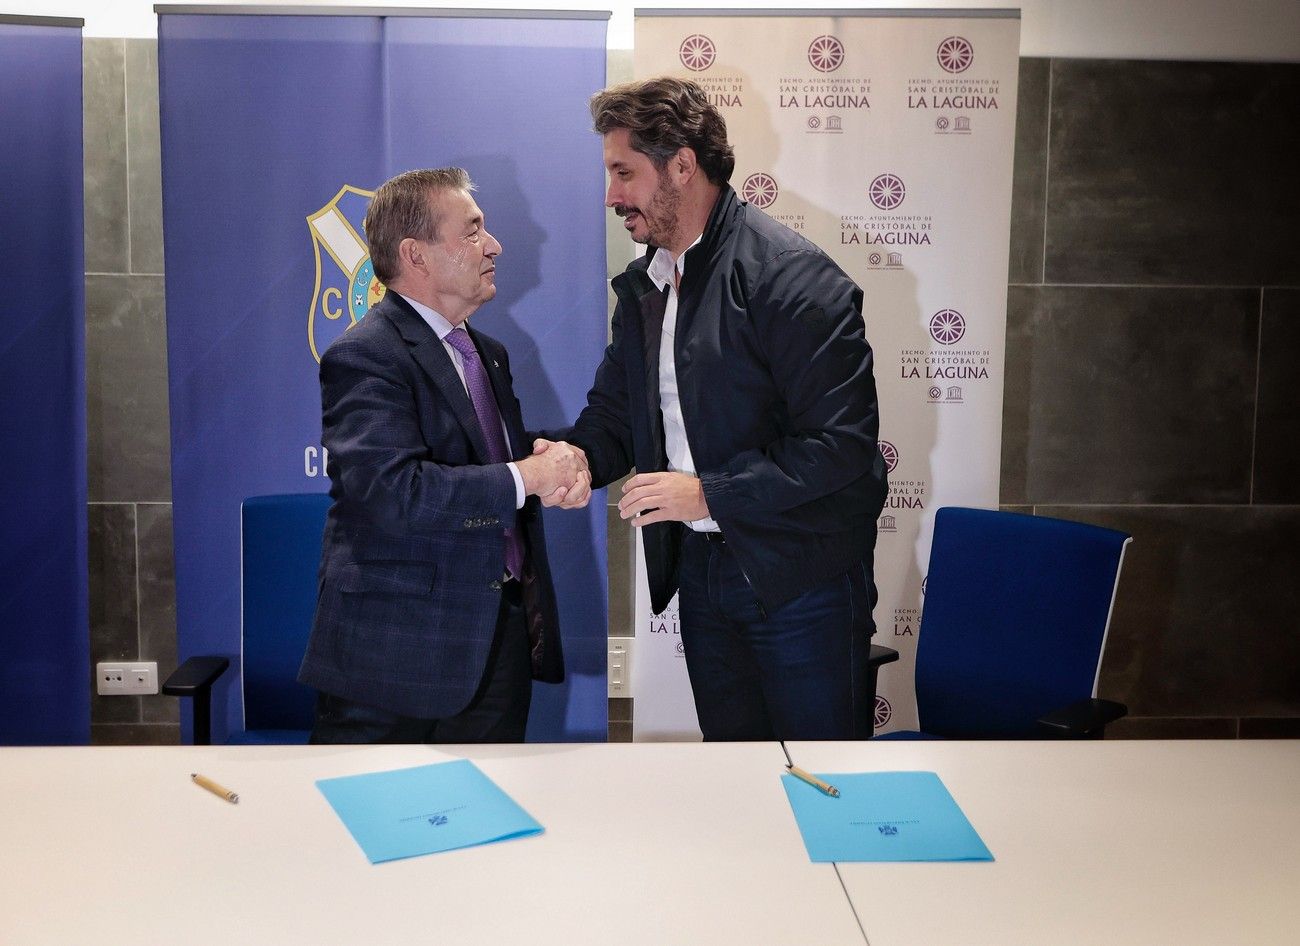 Acuerdo de colaboración ente el CD Tenerife y el Ayuntamiento de La Laguna